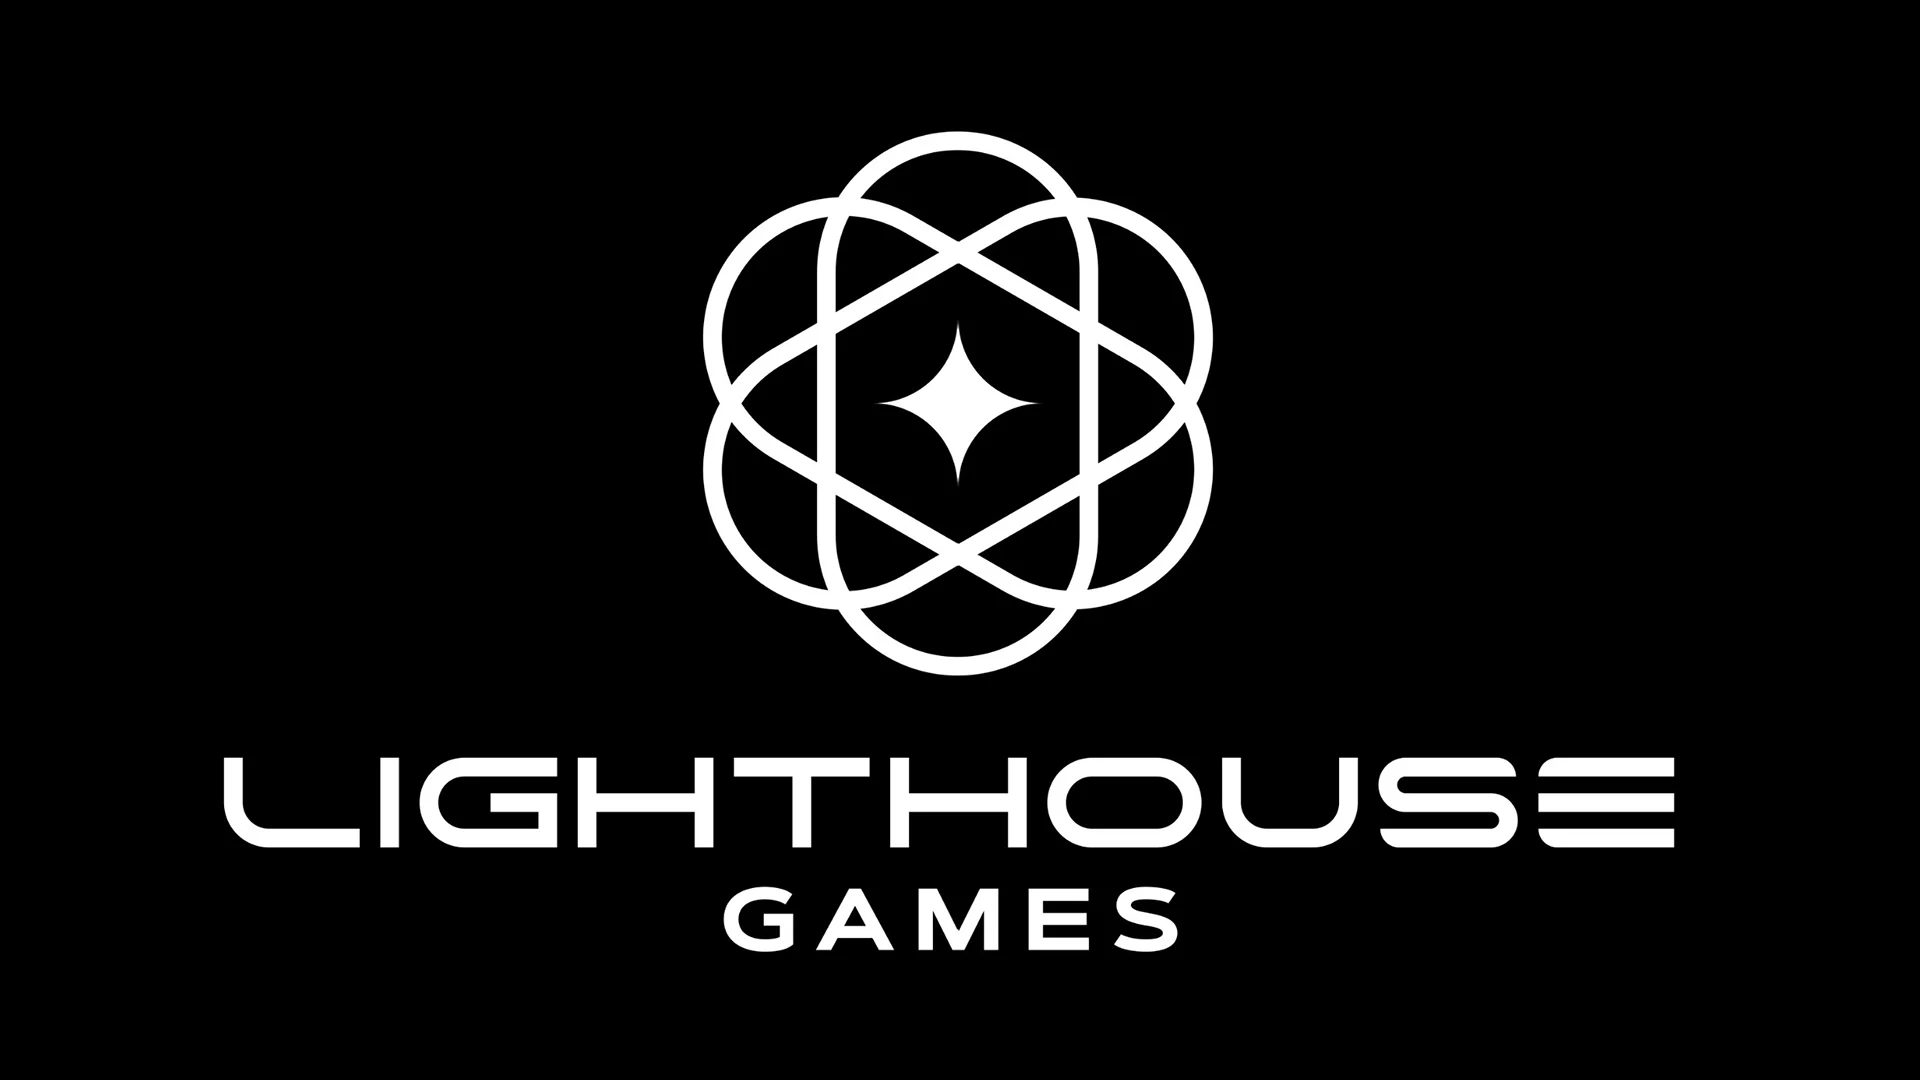 Lighthouse Games, det nye studioet til Playground Games-gründeren, har mottatt en betydelig investering fra kinesiske Tencent.